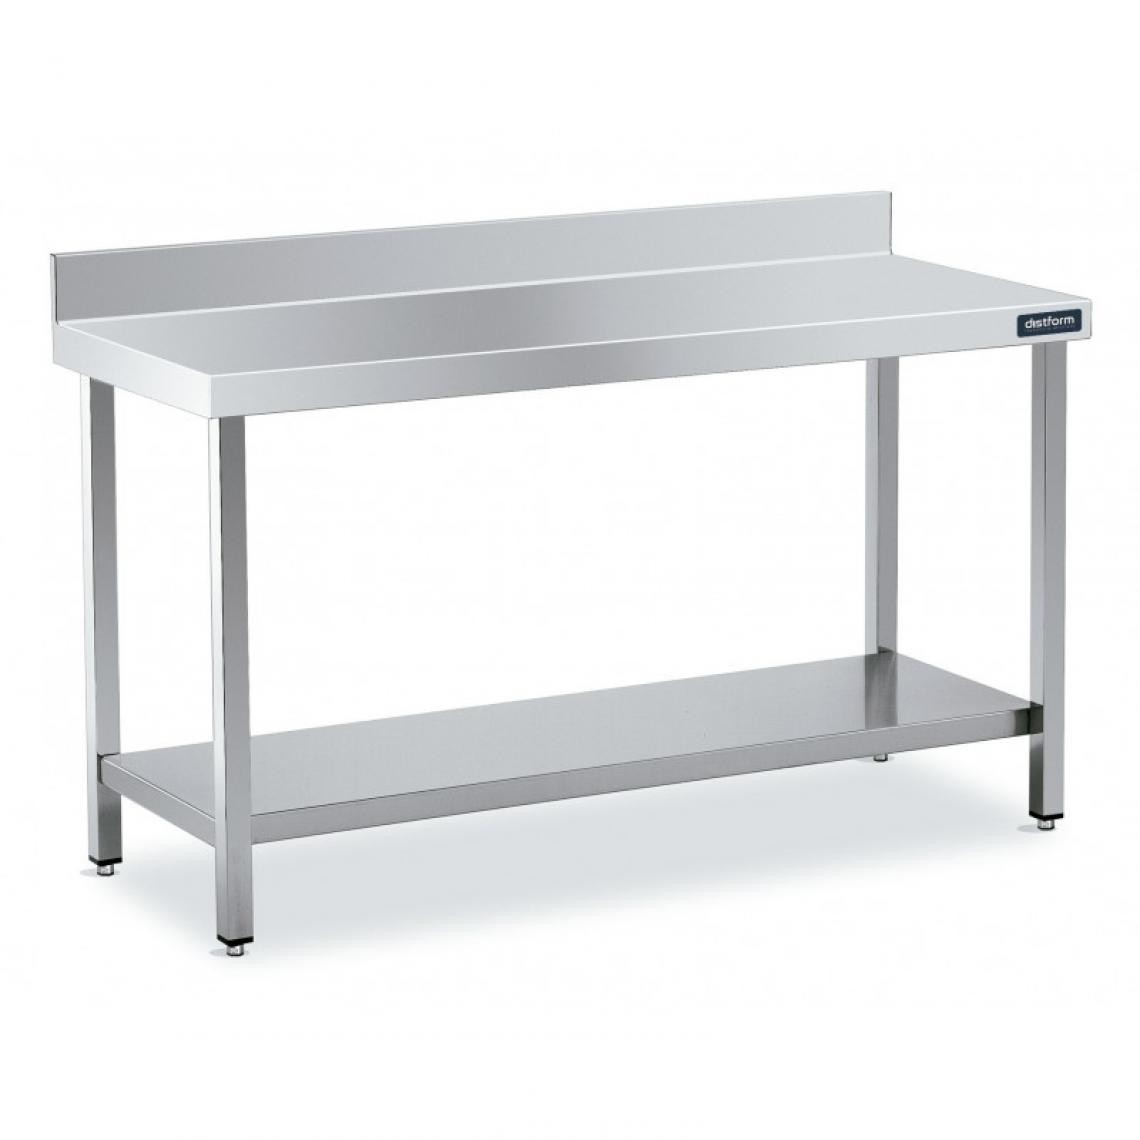 DISTFORM - Table Adossée en Inox avec 1 étagère Profondeur 600 mm - Distform - Acier inoxydable2800x600 - Tables à manger